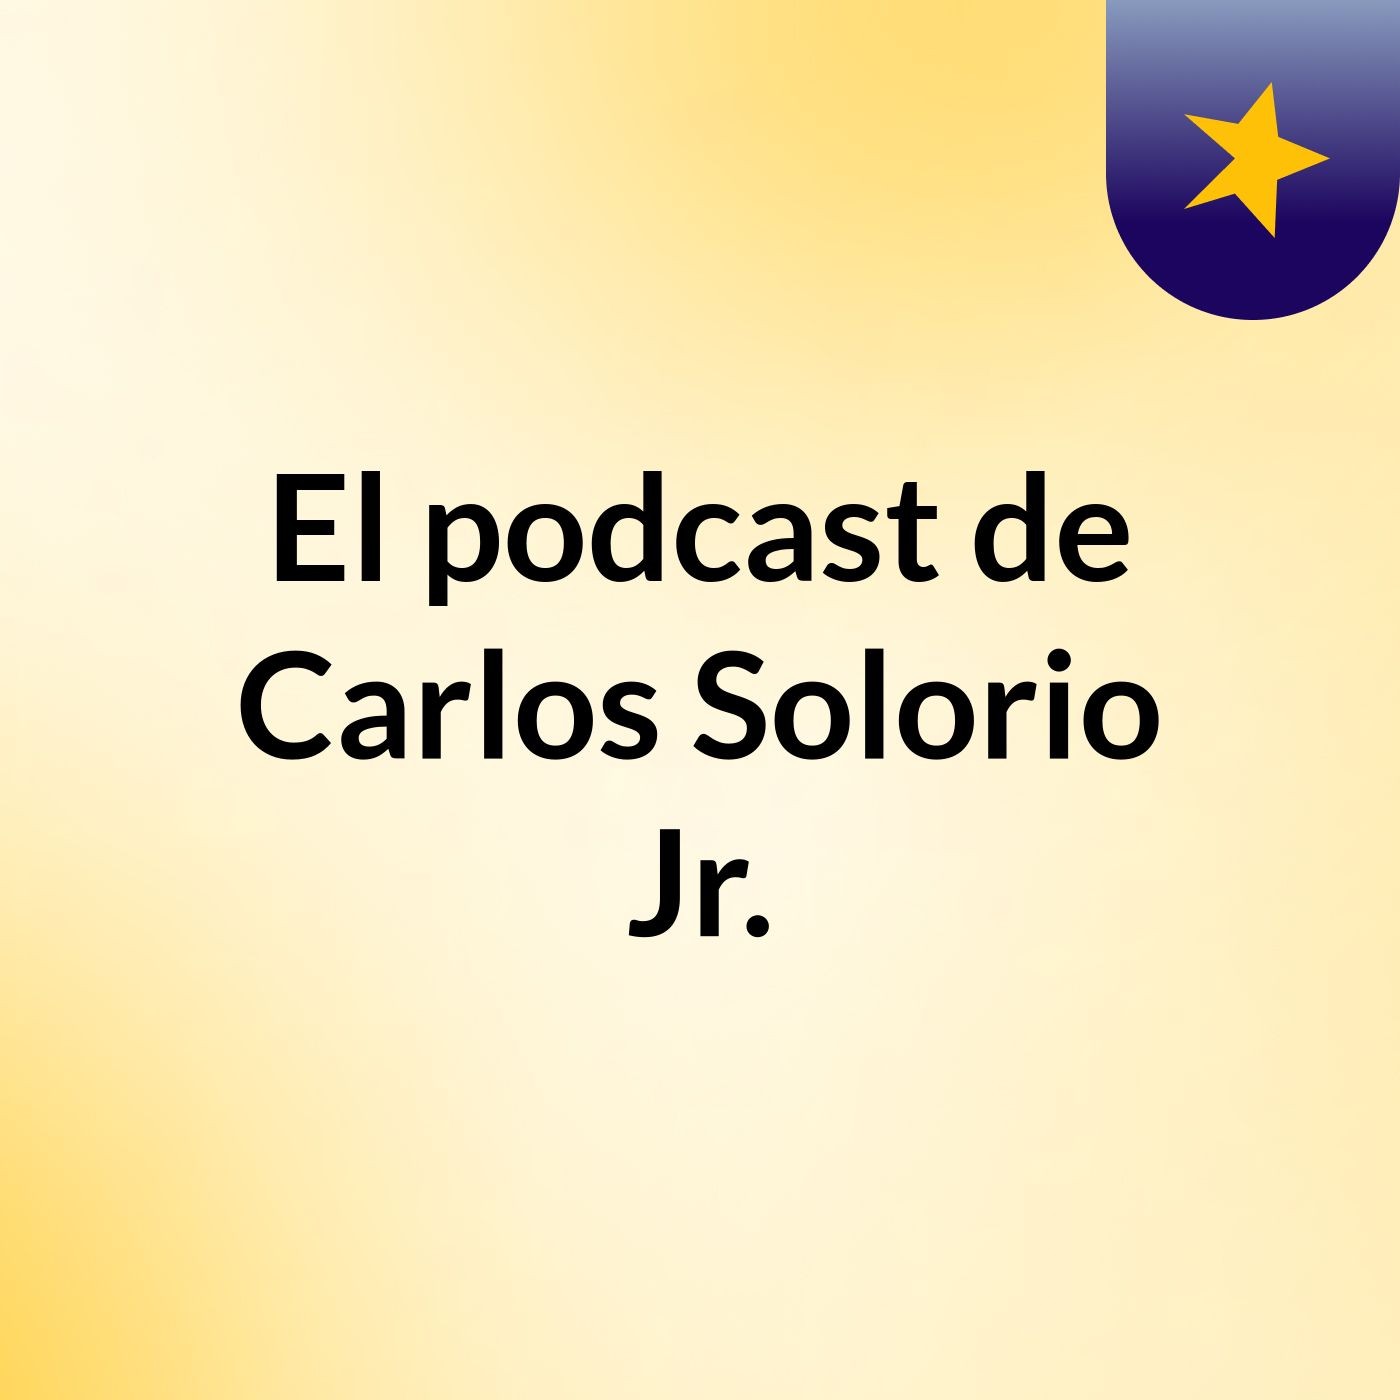 El podcast de Carlos Solorio Jr.